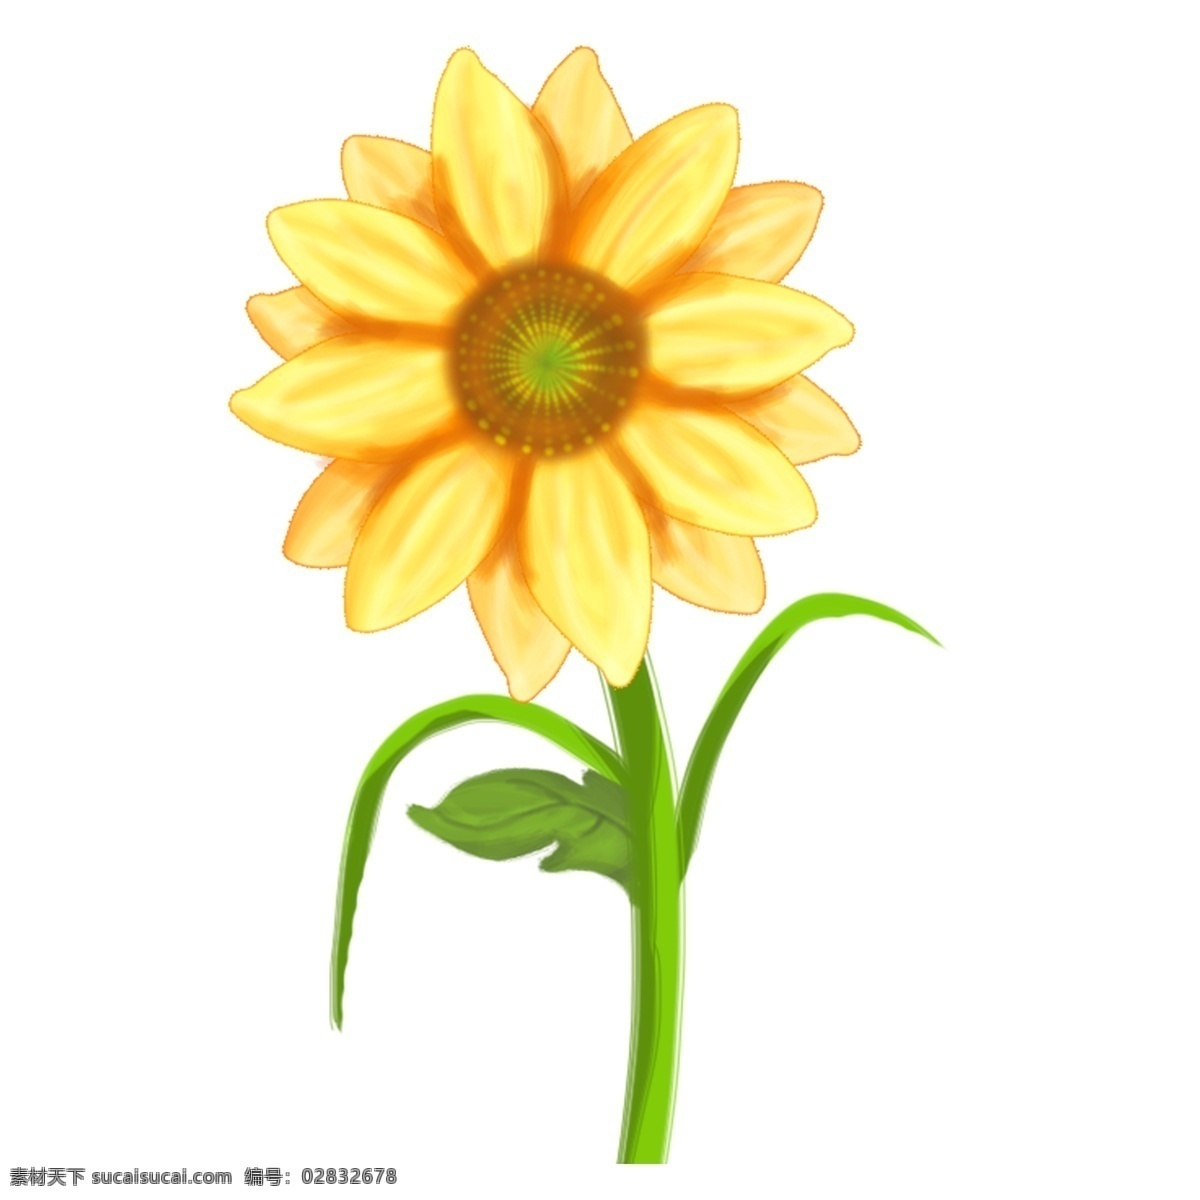 春天 夏天 黄色 向日葵 手绘 插画 花 植物 绿叶 户外 郊外 假期 高清 唯美 清新 假日 公园